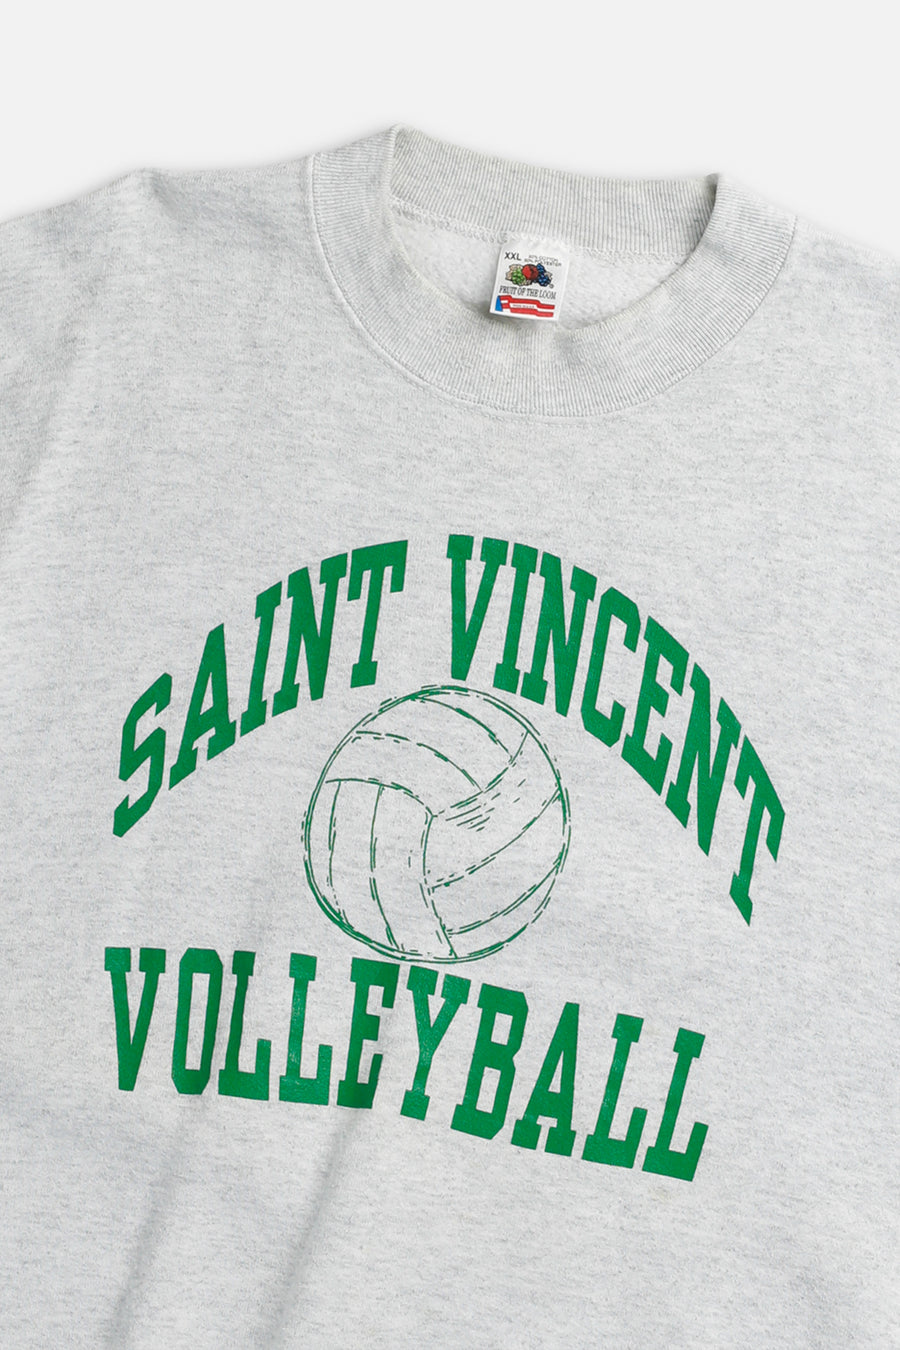 Vintage St. Vincent Volleyball Sweatshirt - XXL